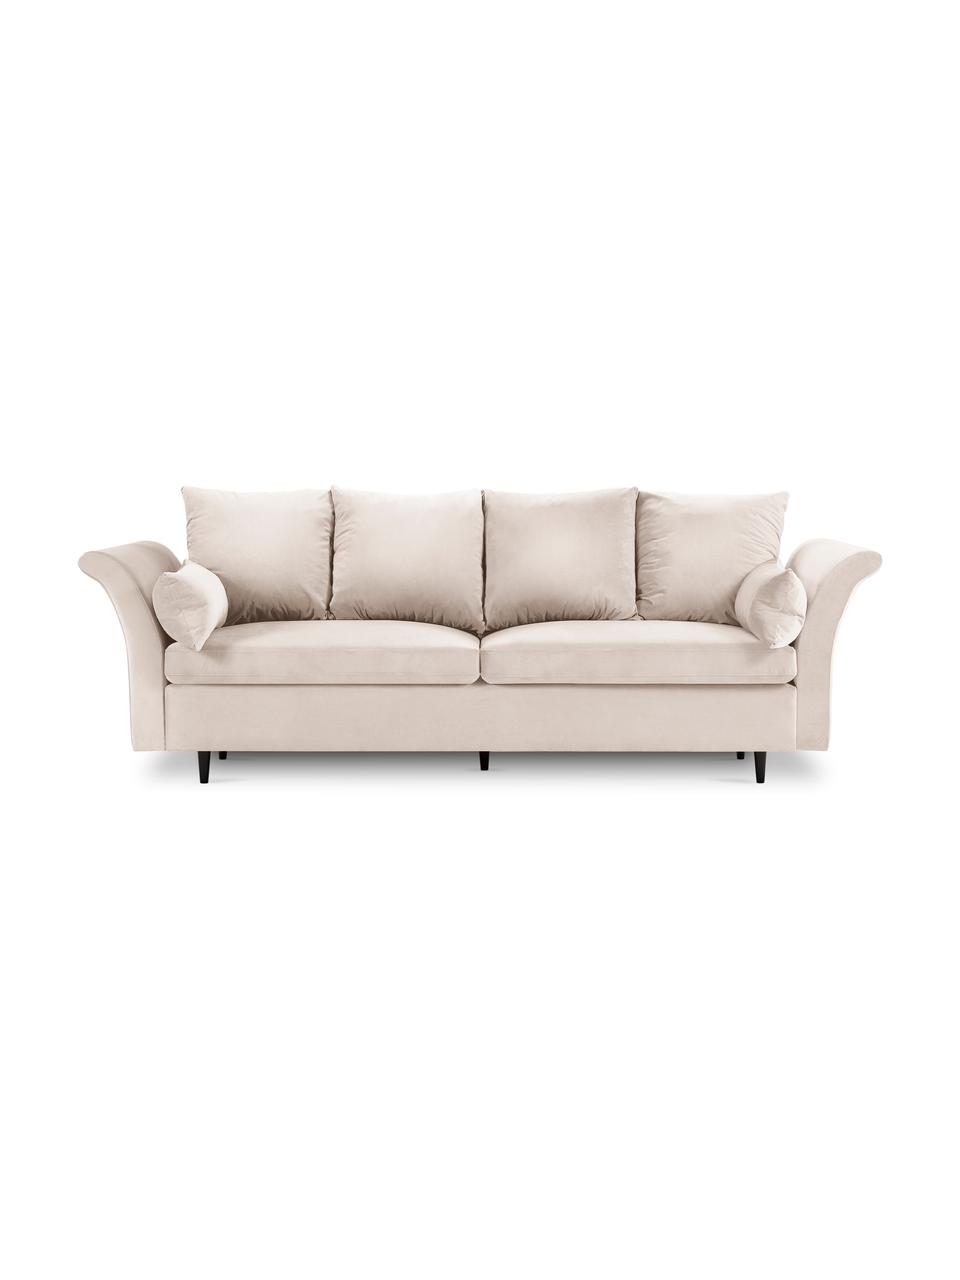 Sofa rozkładana z aksamitu z funkcją przechowywania Lola (3-osobowa), Nogi: drewno, Beżowa tkanina, S 245 x G 95 cm